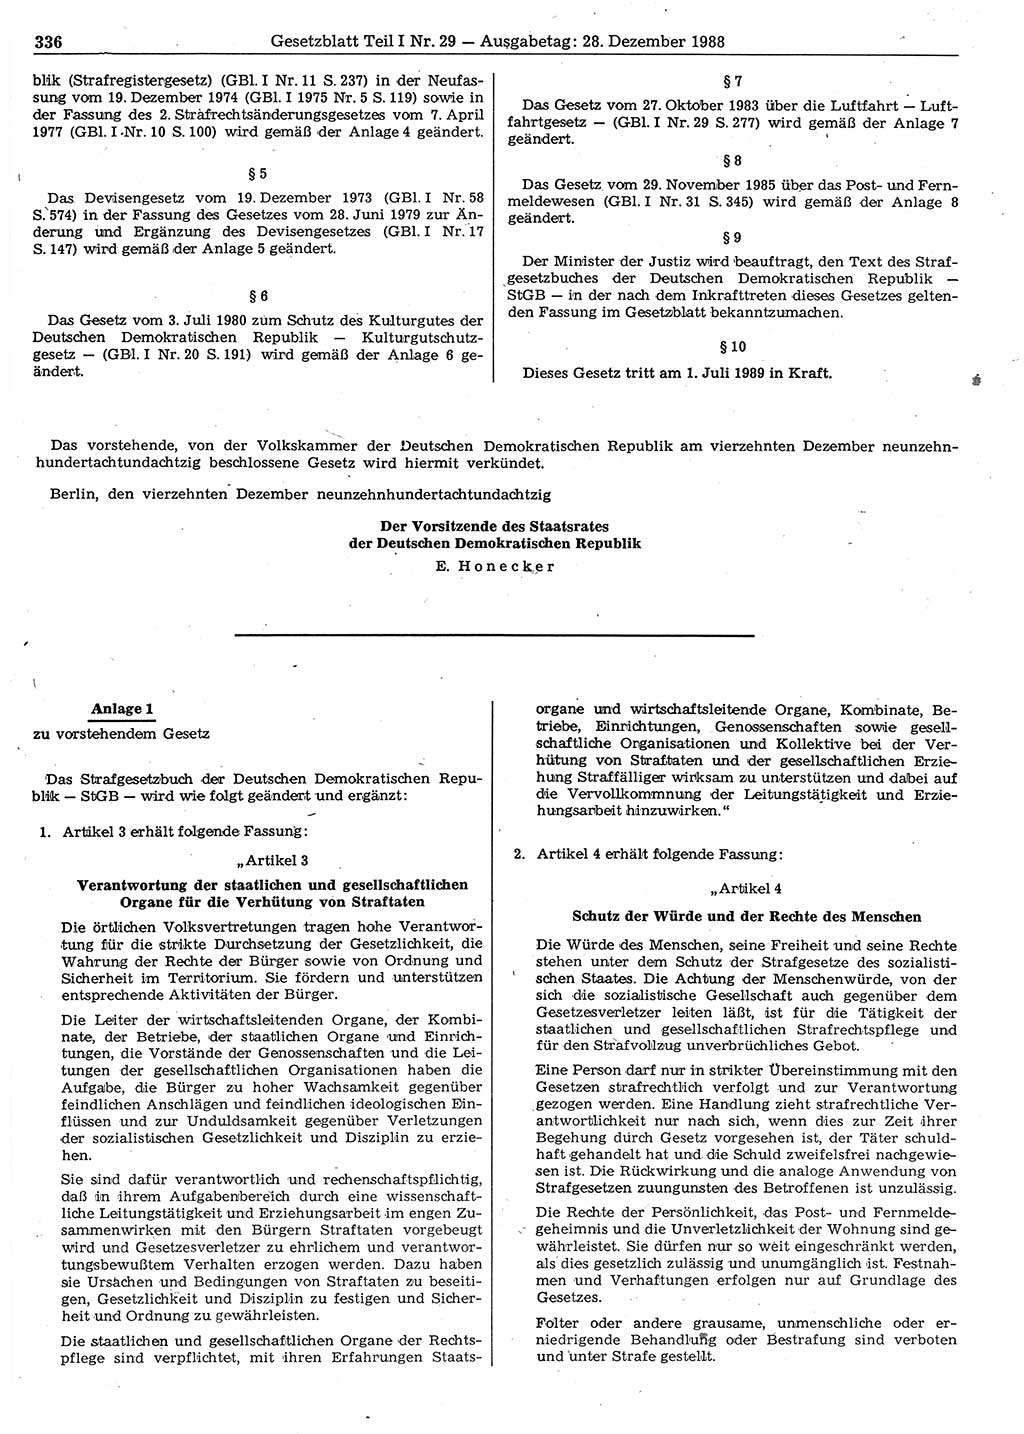 Gesetzblatt (GBl.) der Deutschen Demokratischen Republik (DDR) Teil Ⅰ 1988, Seite 336 (GBl. DDR Ⅰ 1988, S. 336)